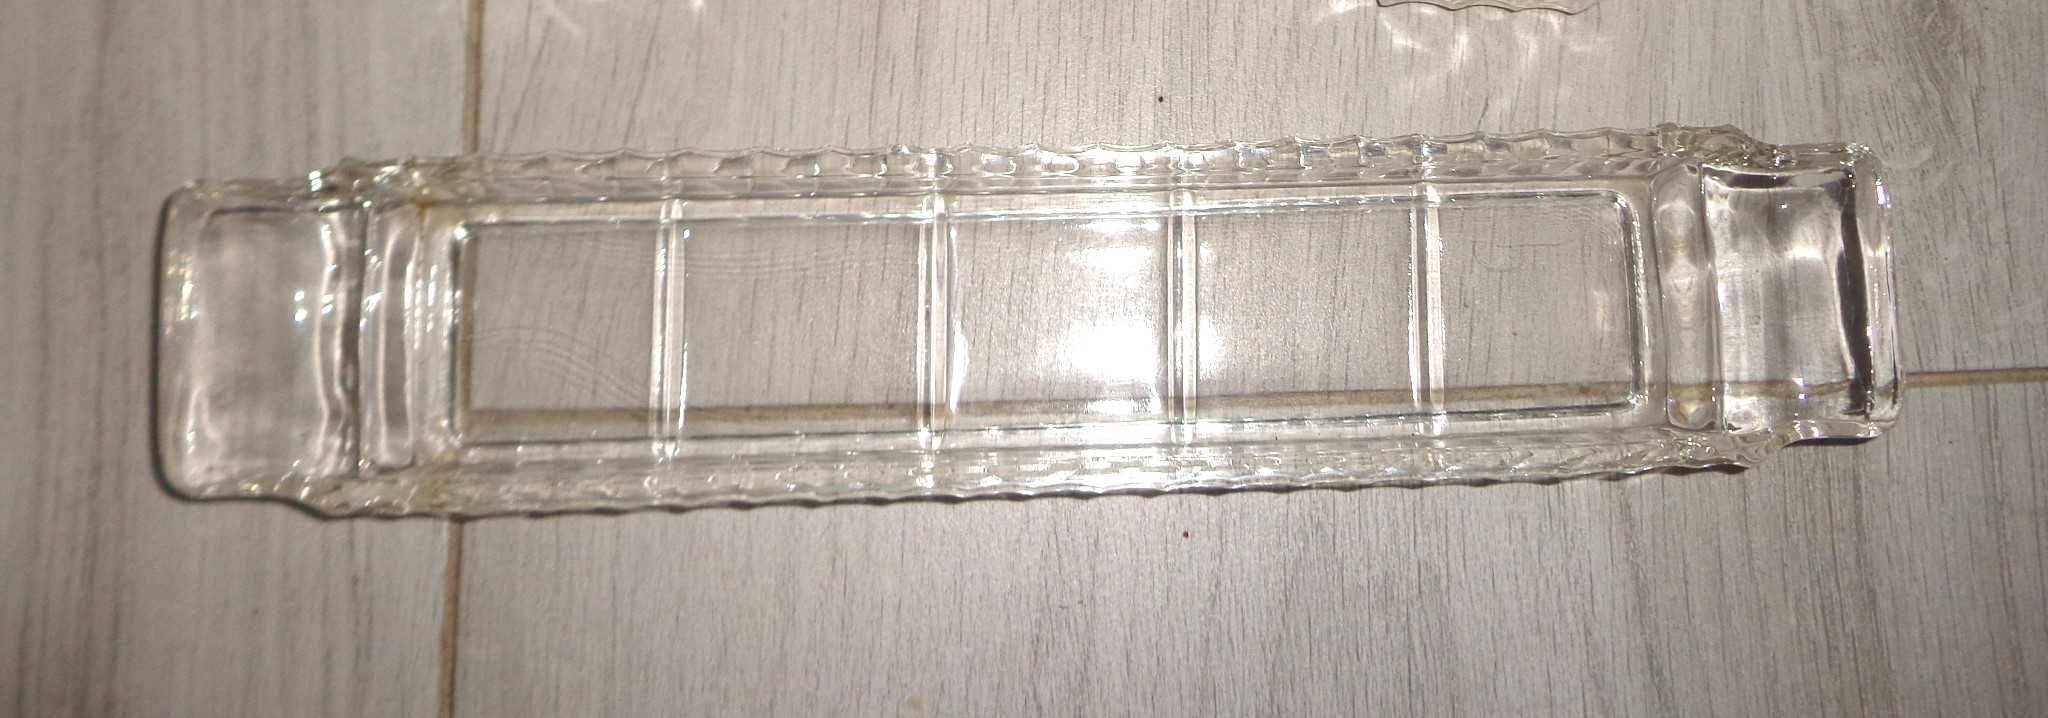 Środek stołu - zestaw szklany do przypraw- lata 70 XXw.